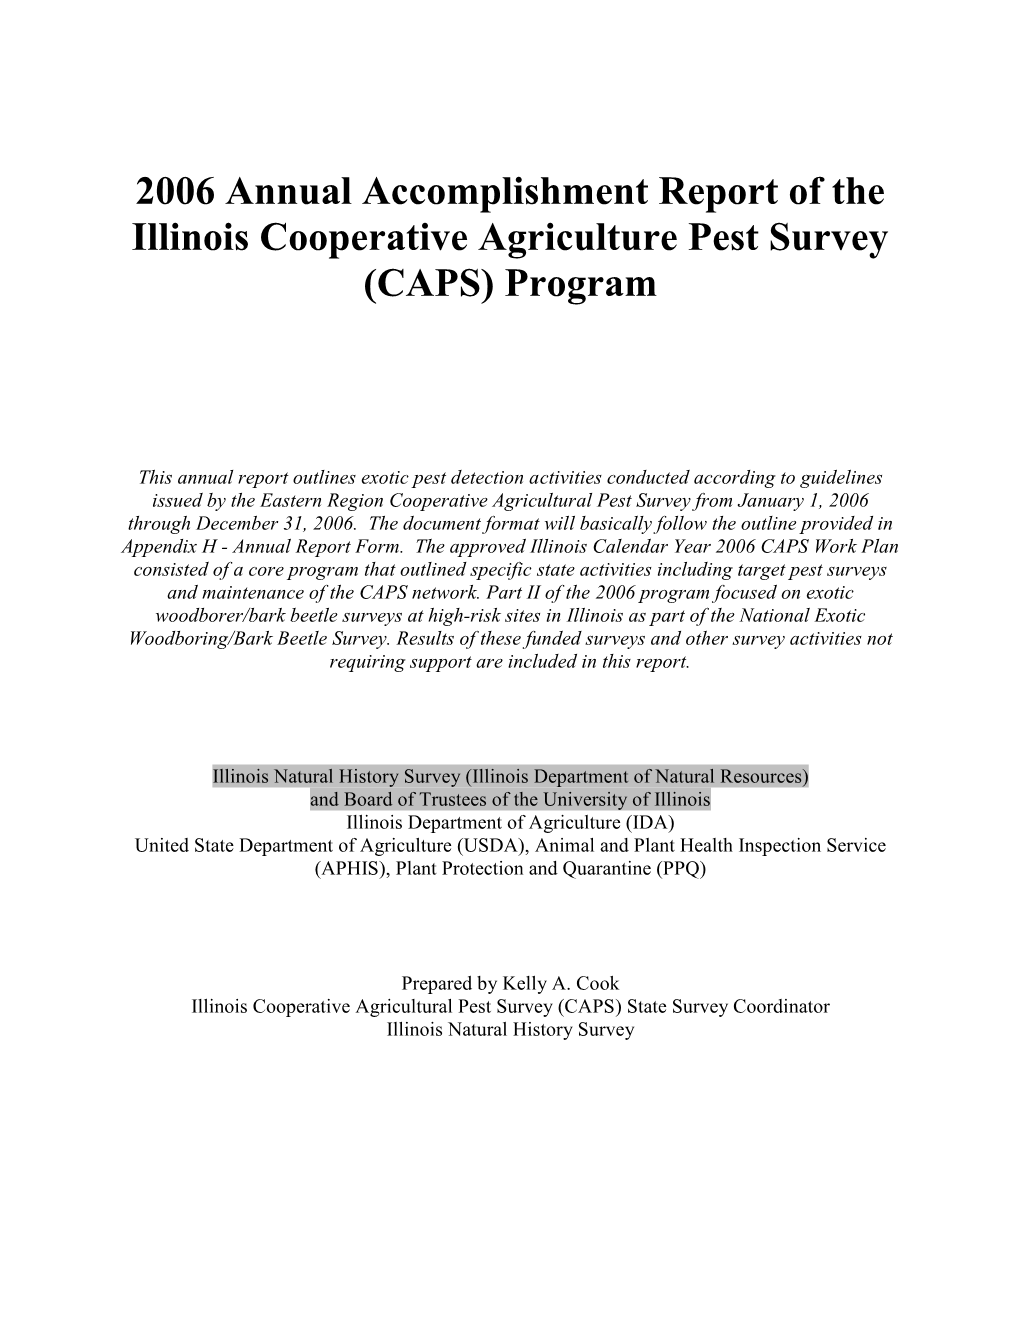 2006 Annual CAPS Accomplishment Report